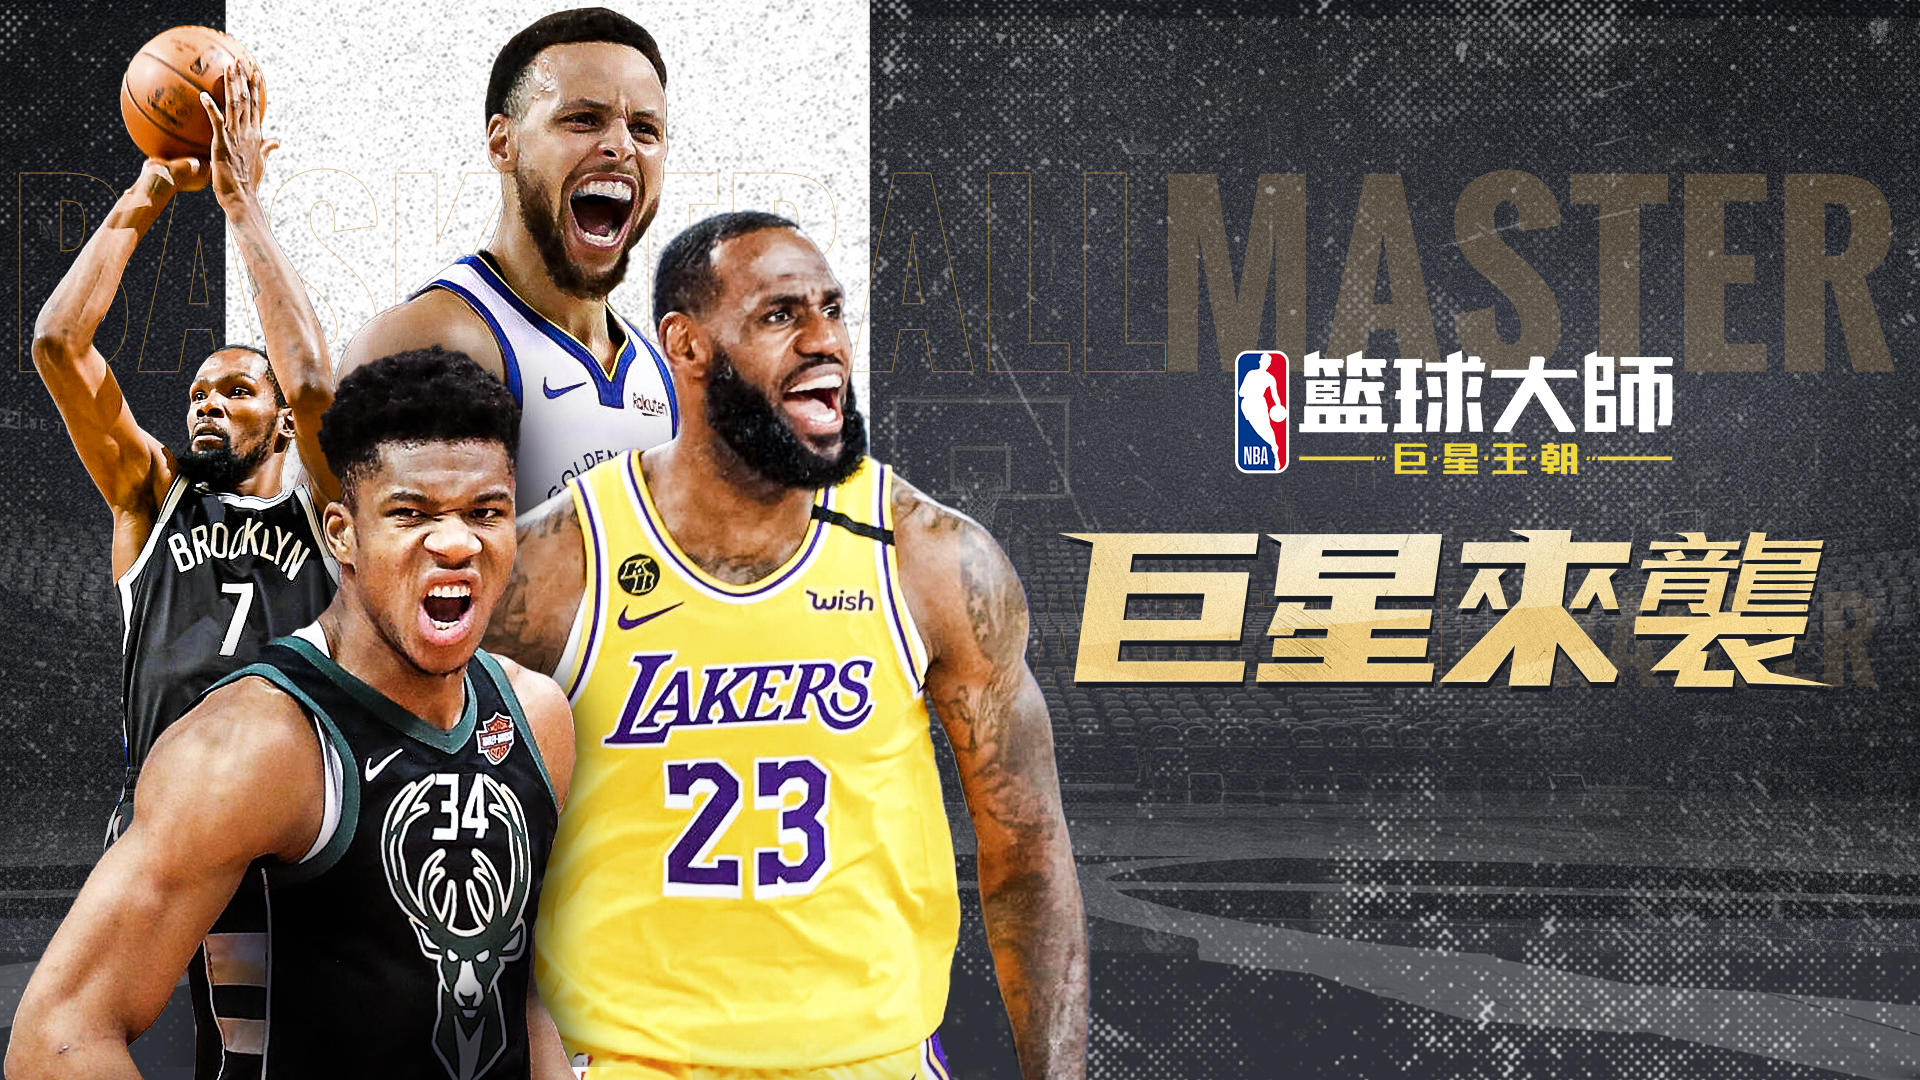 Banner of Mestres de basquete da NBA 